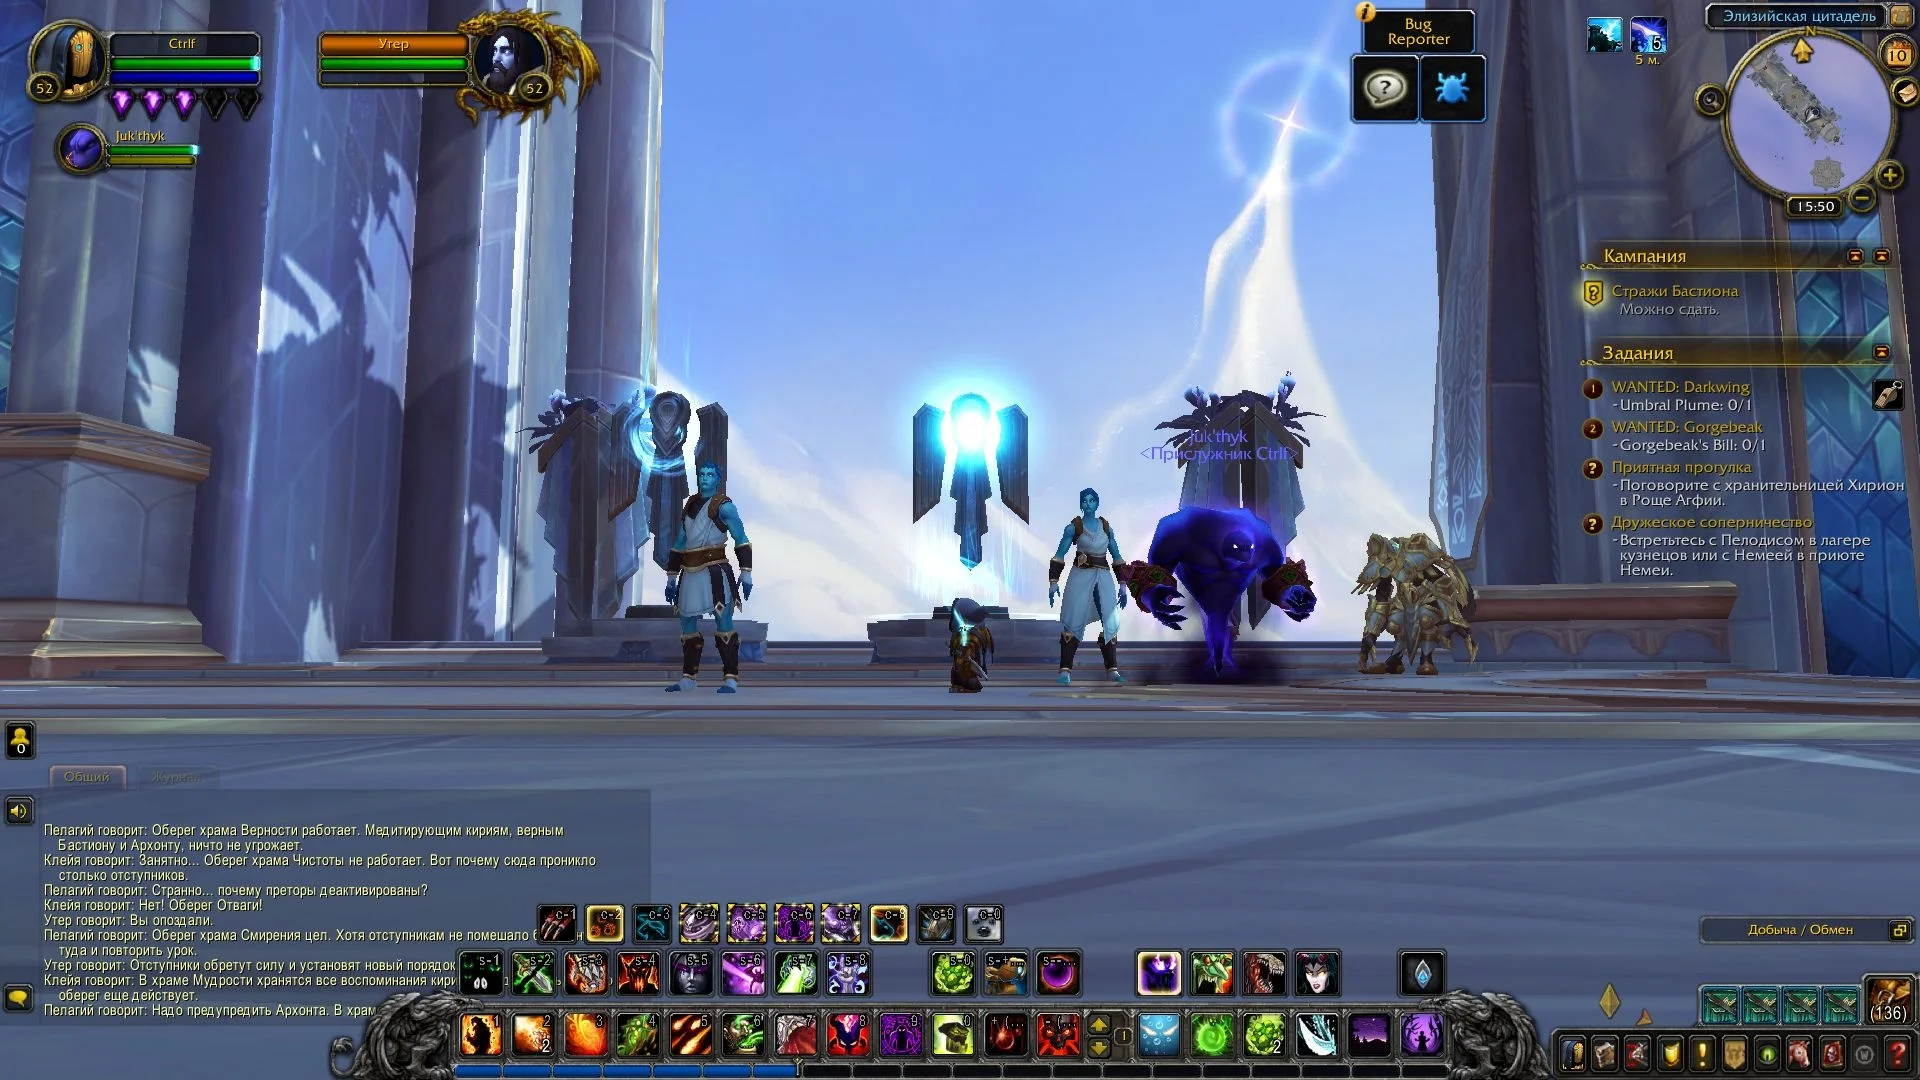 Version world. World of Warcraft Скриншоты Альфа версии. Добро пожаловать в Альфа версию игра. SHAMANLAND скрытие Скриншоты.